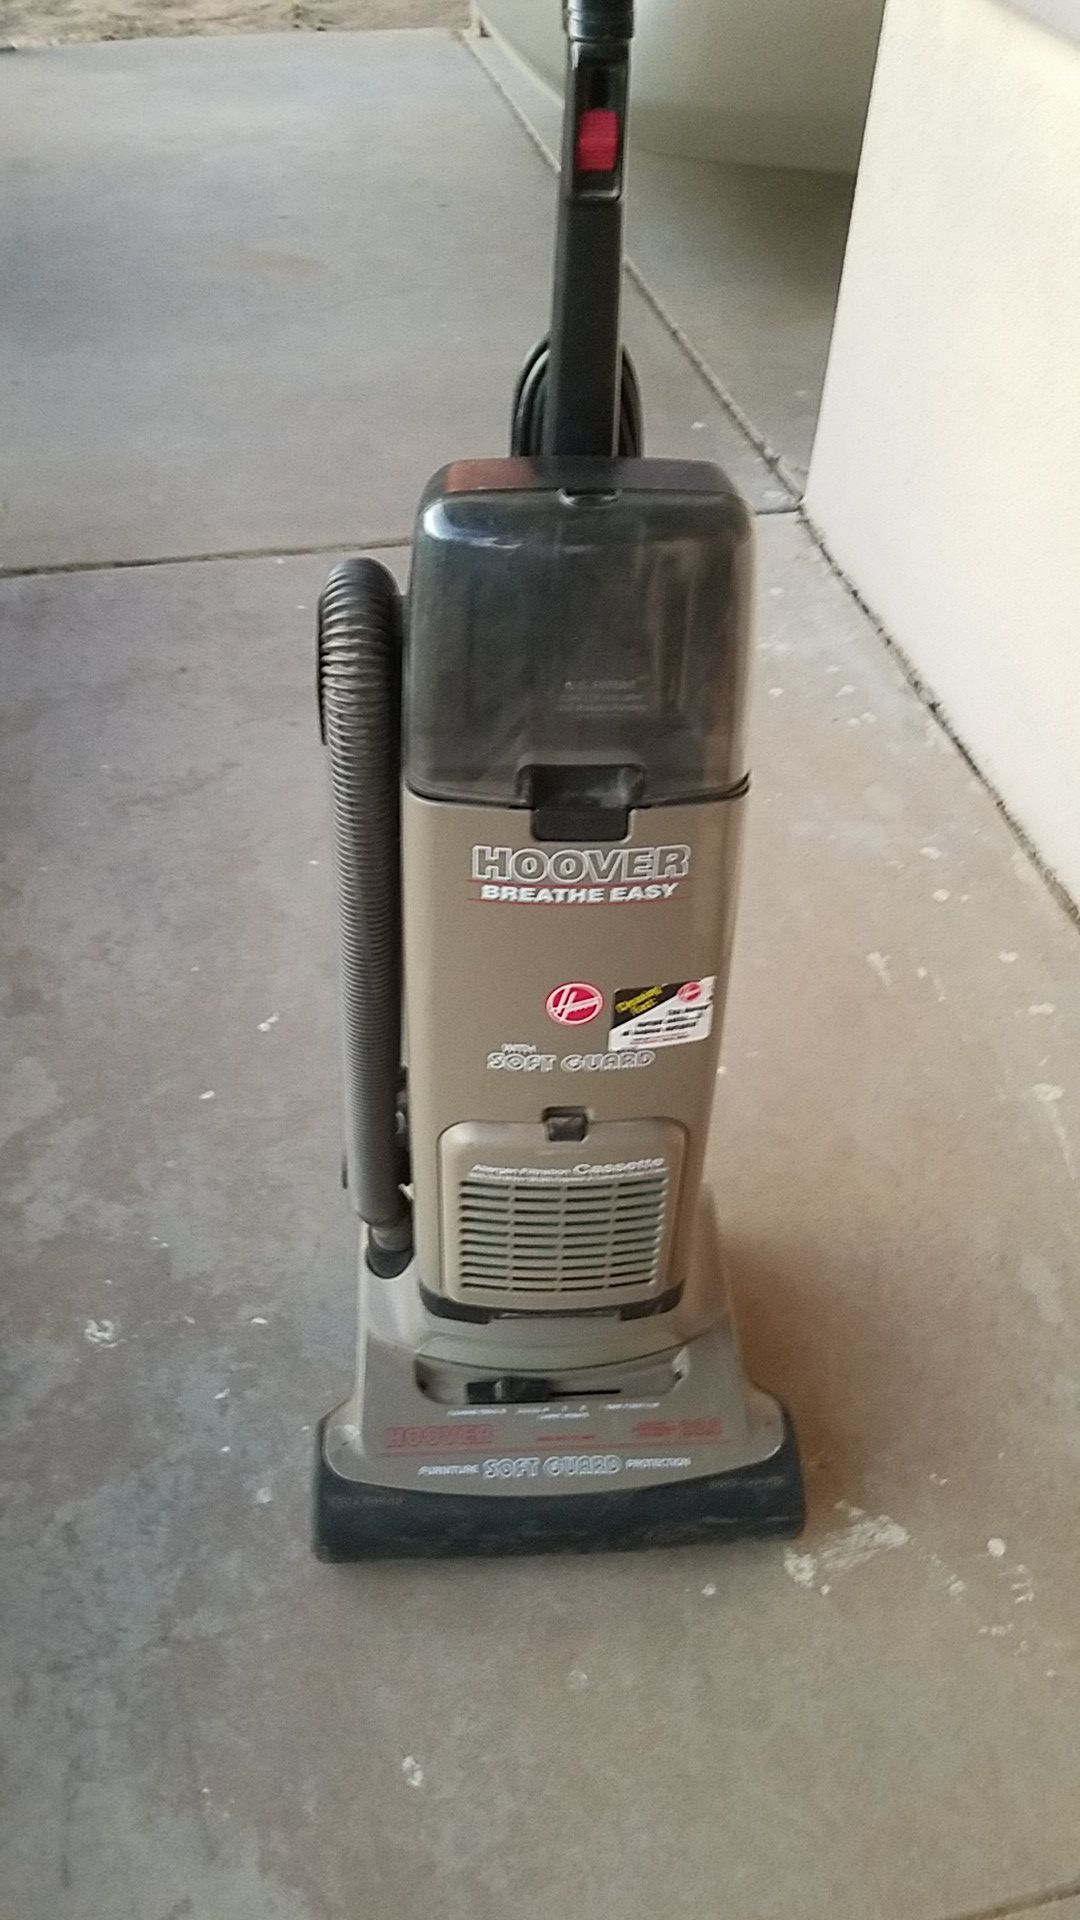 Hoover Breath Easy vacuum